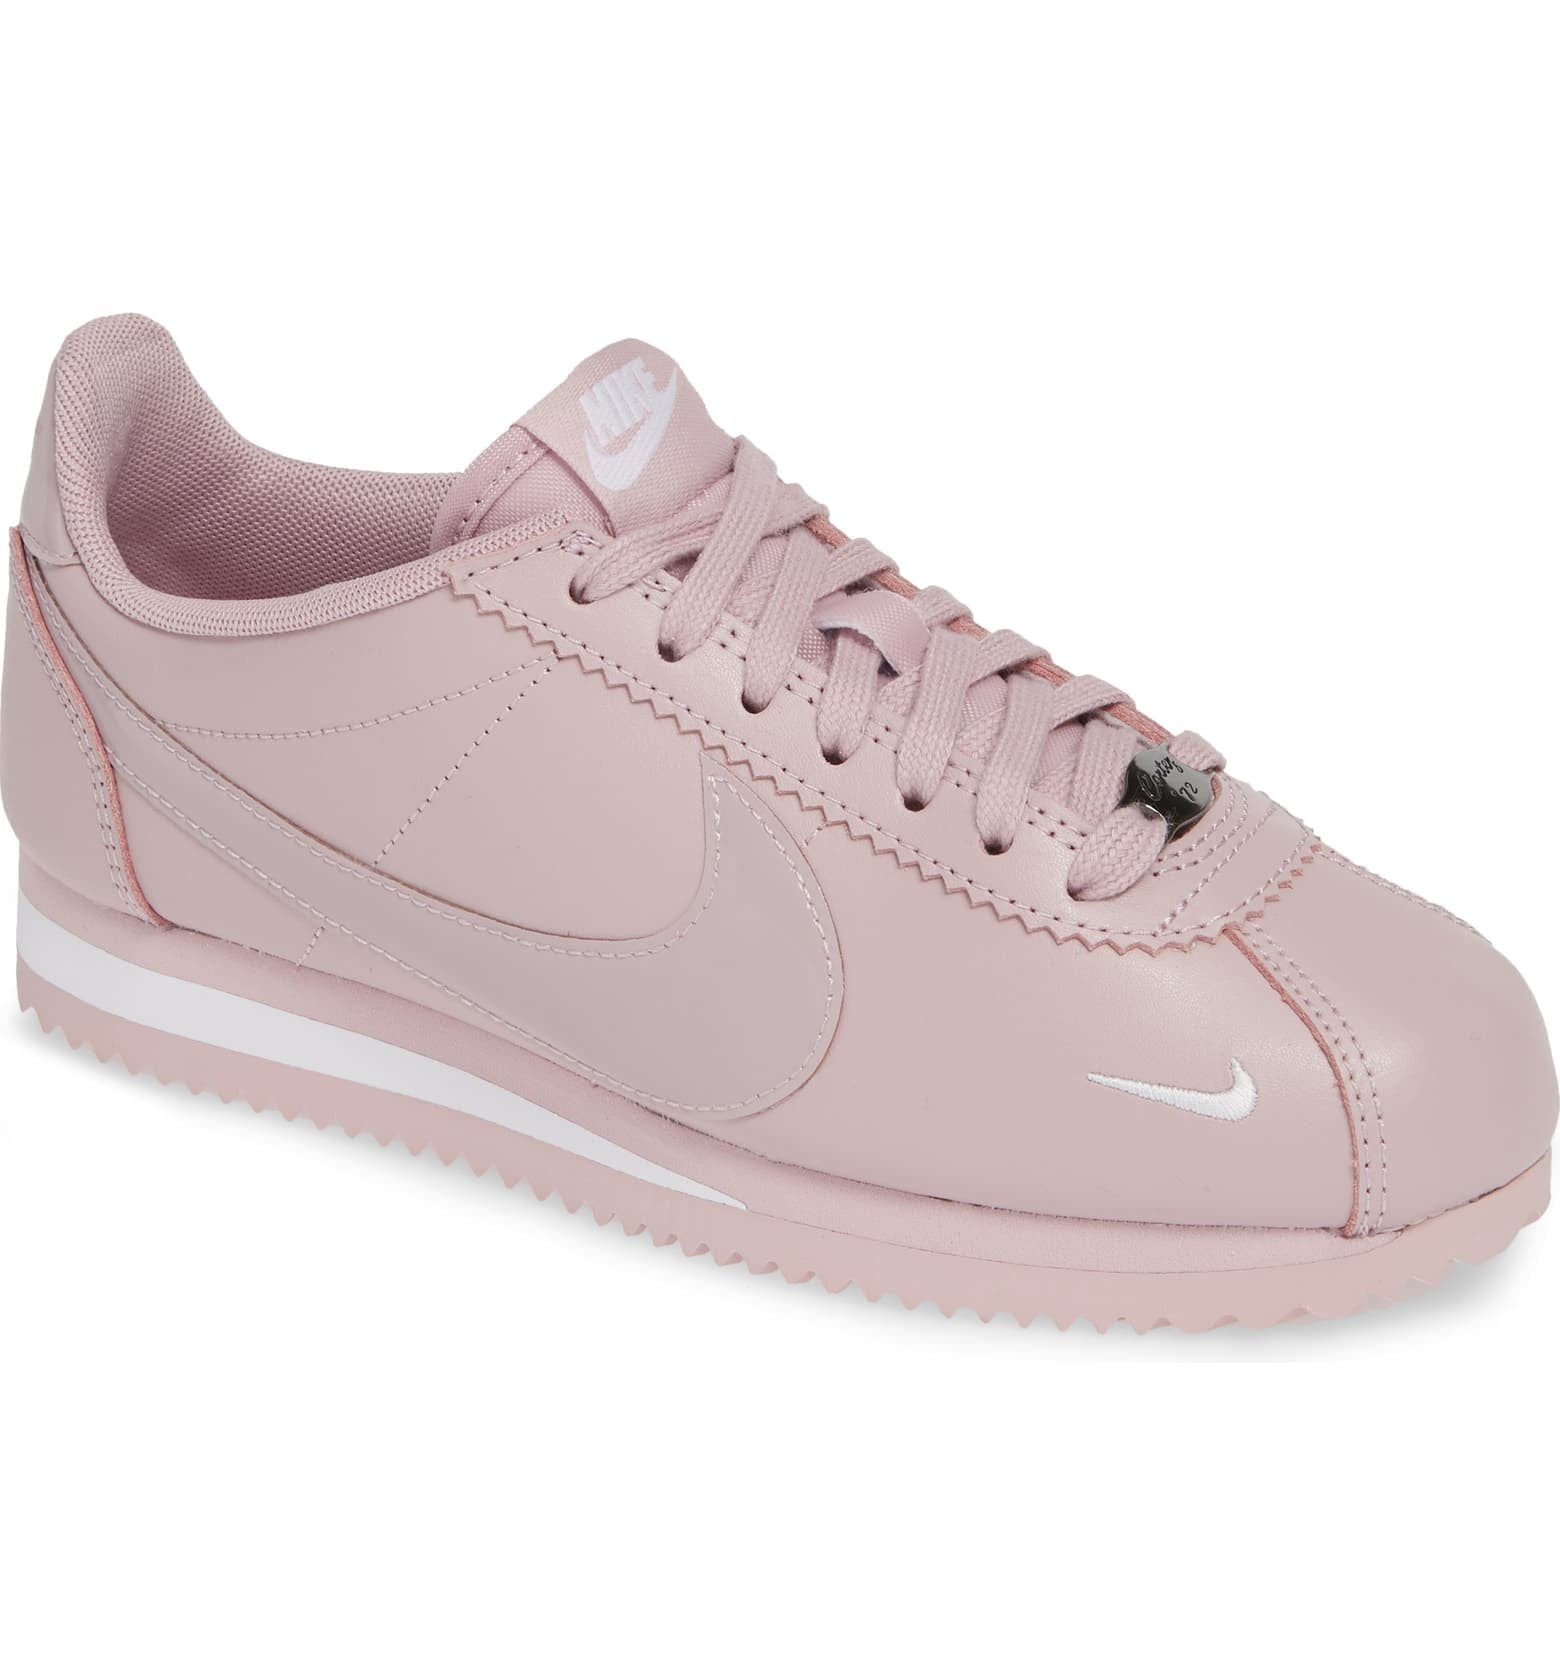 pink cortez sneakers